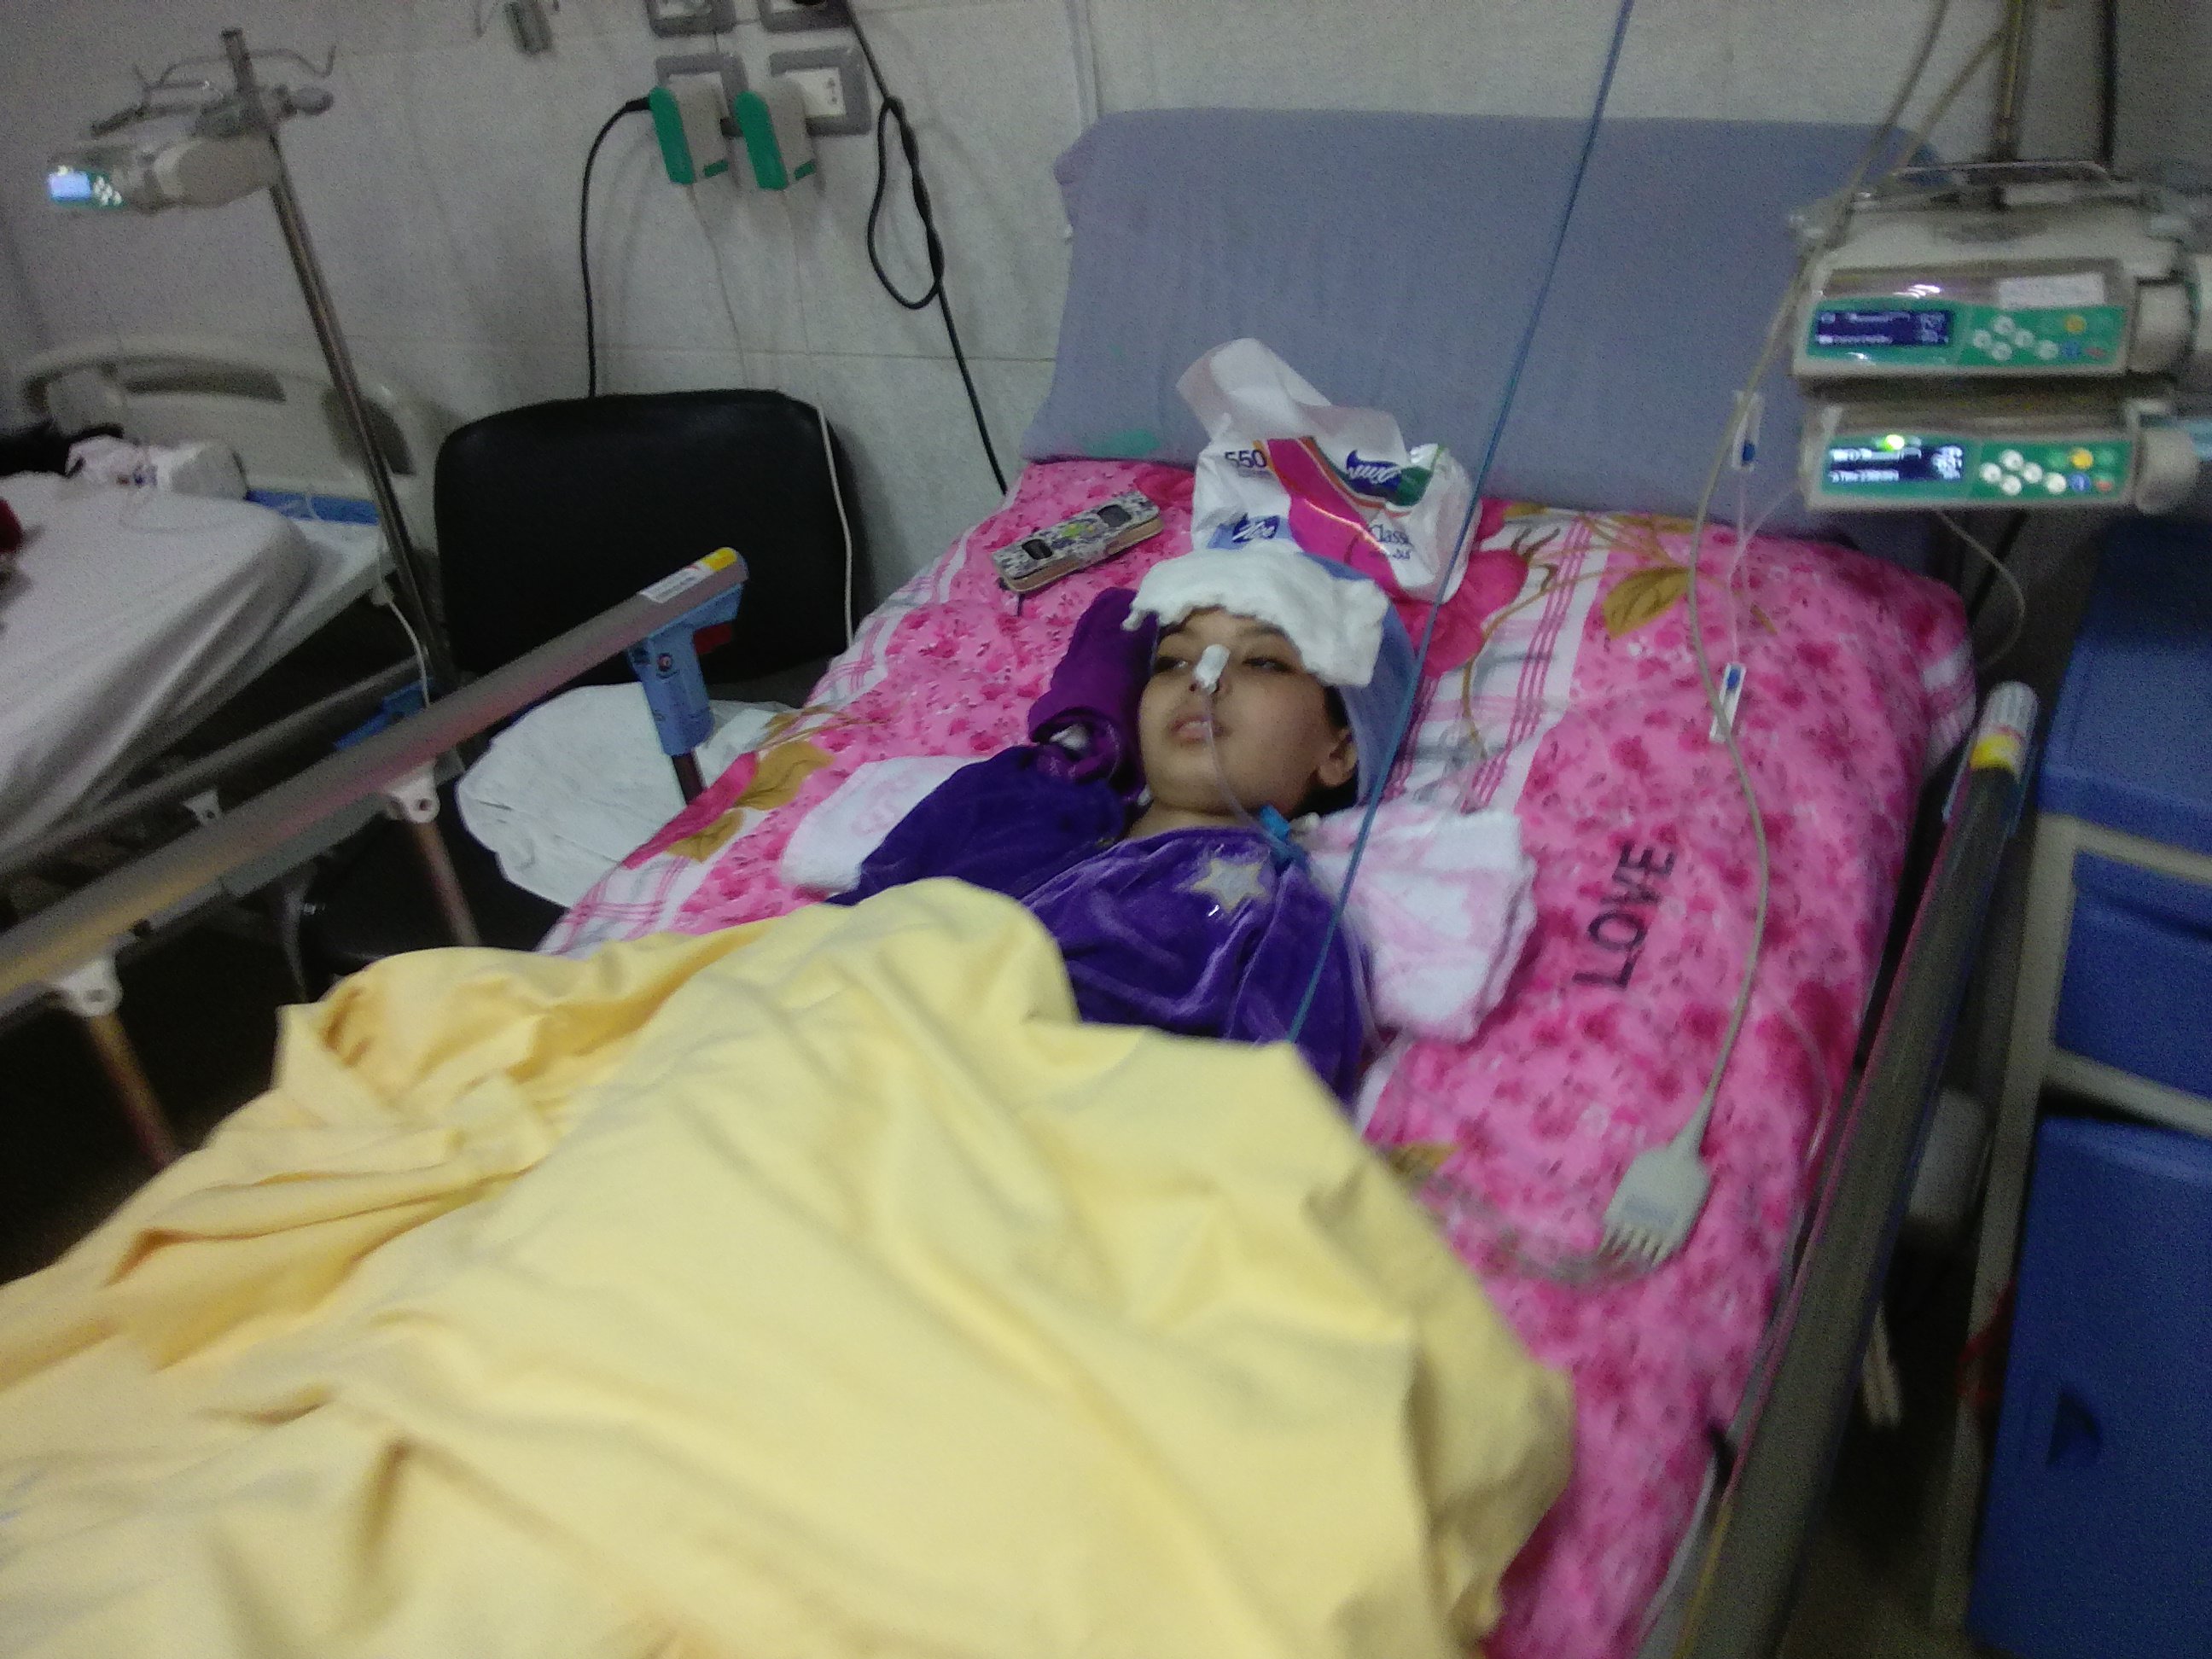  بالصور.. إصابة طفلة بغيبوبة إثر جراحتين لاستئصال ورم بكفر الشيخ